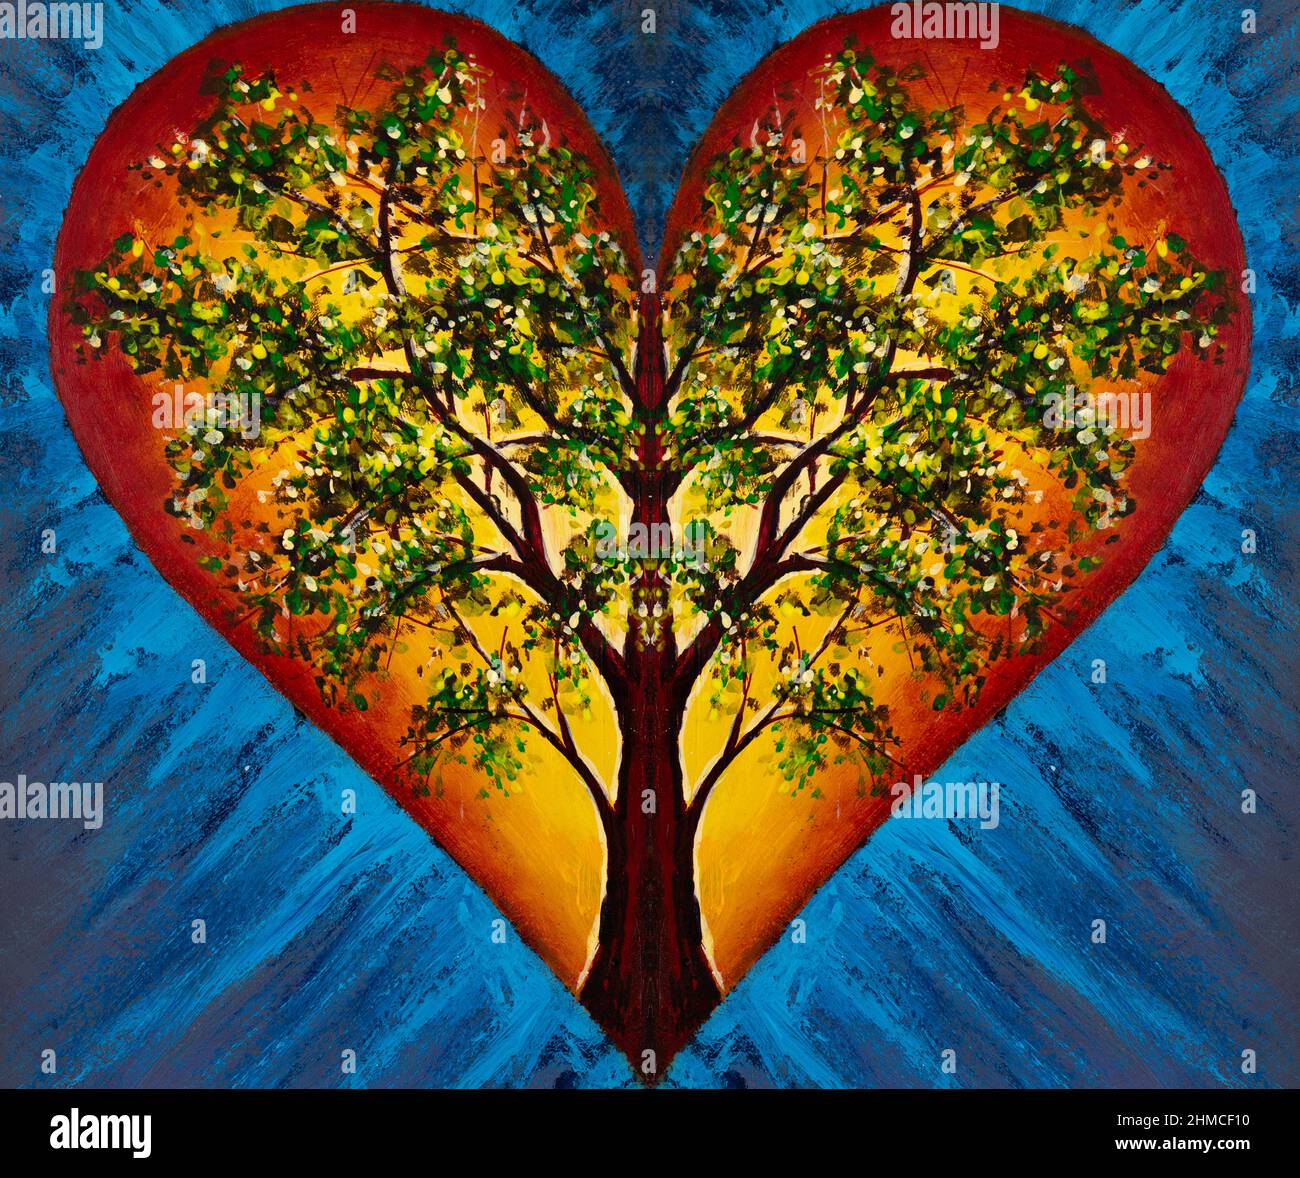 Art peinture coeur avec arbre de vie en fleur à l'intérieur sur fond bleu illustration pour contes de fées art moderne Banque D'Images